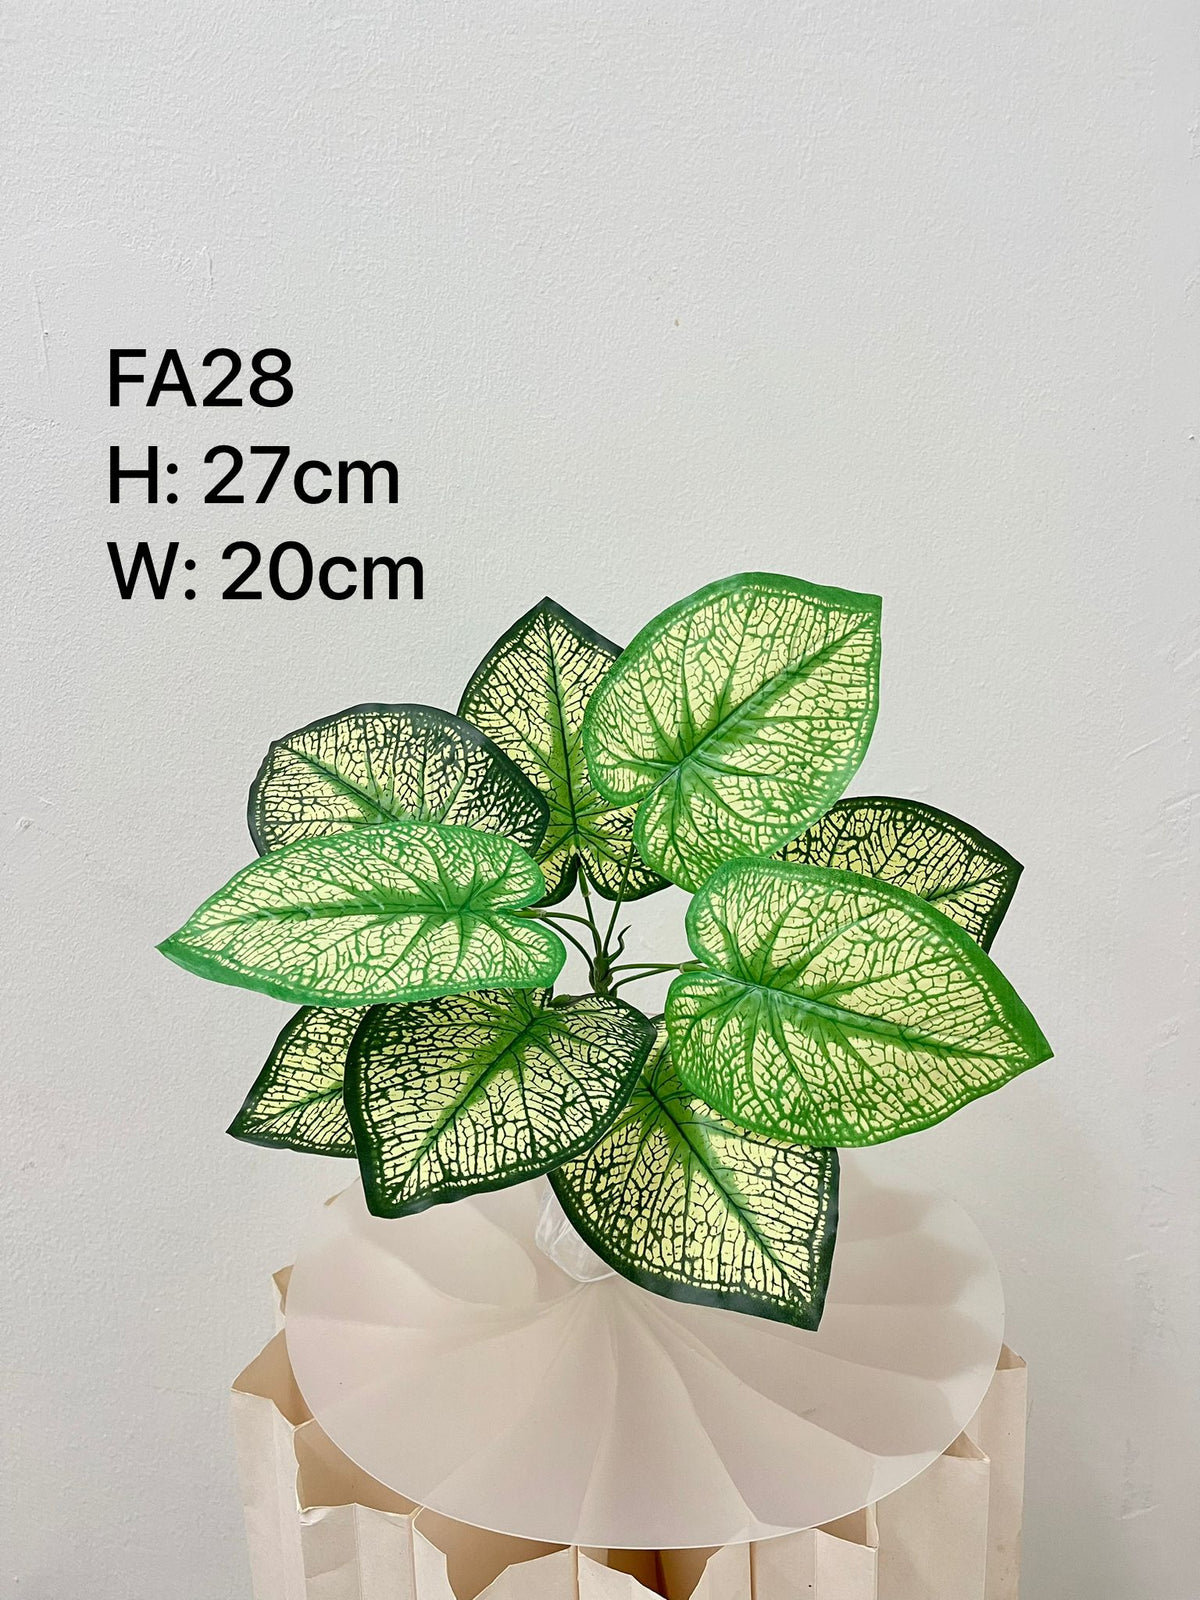 FA28- Artificial green alocasia leaves